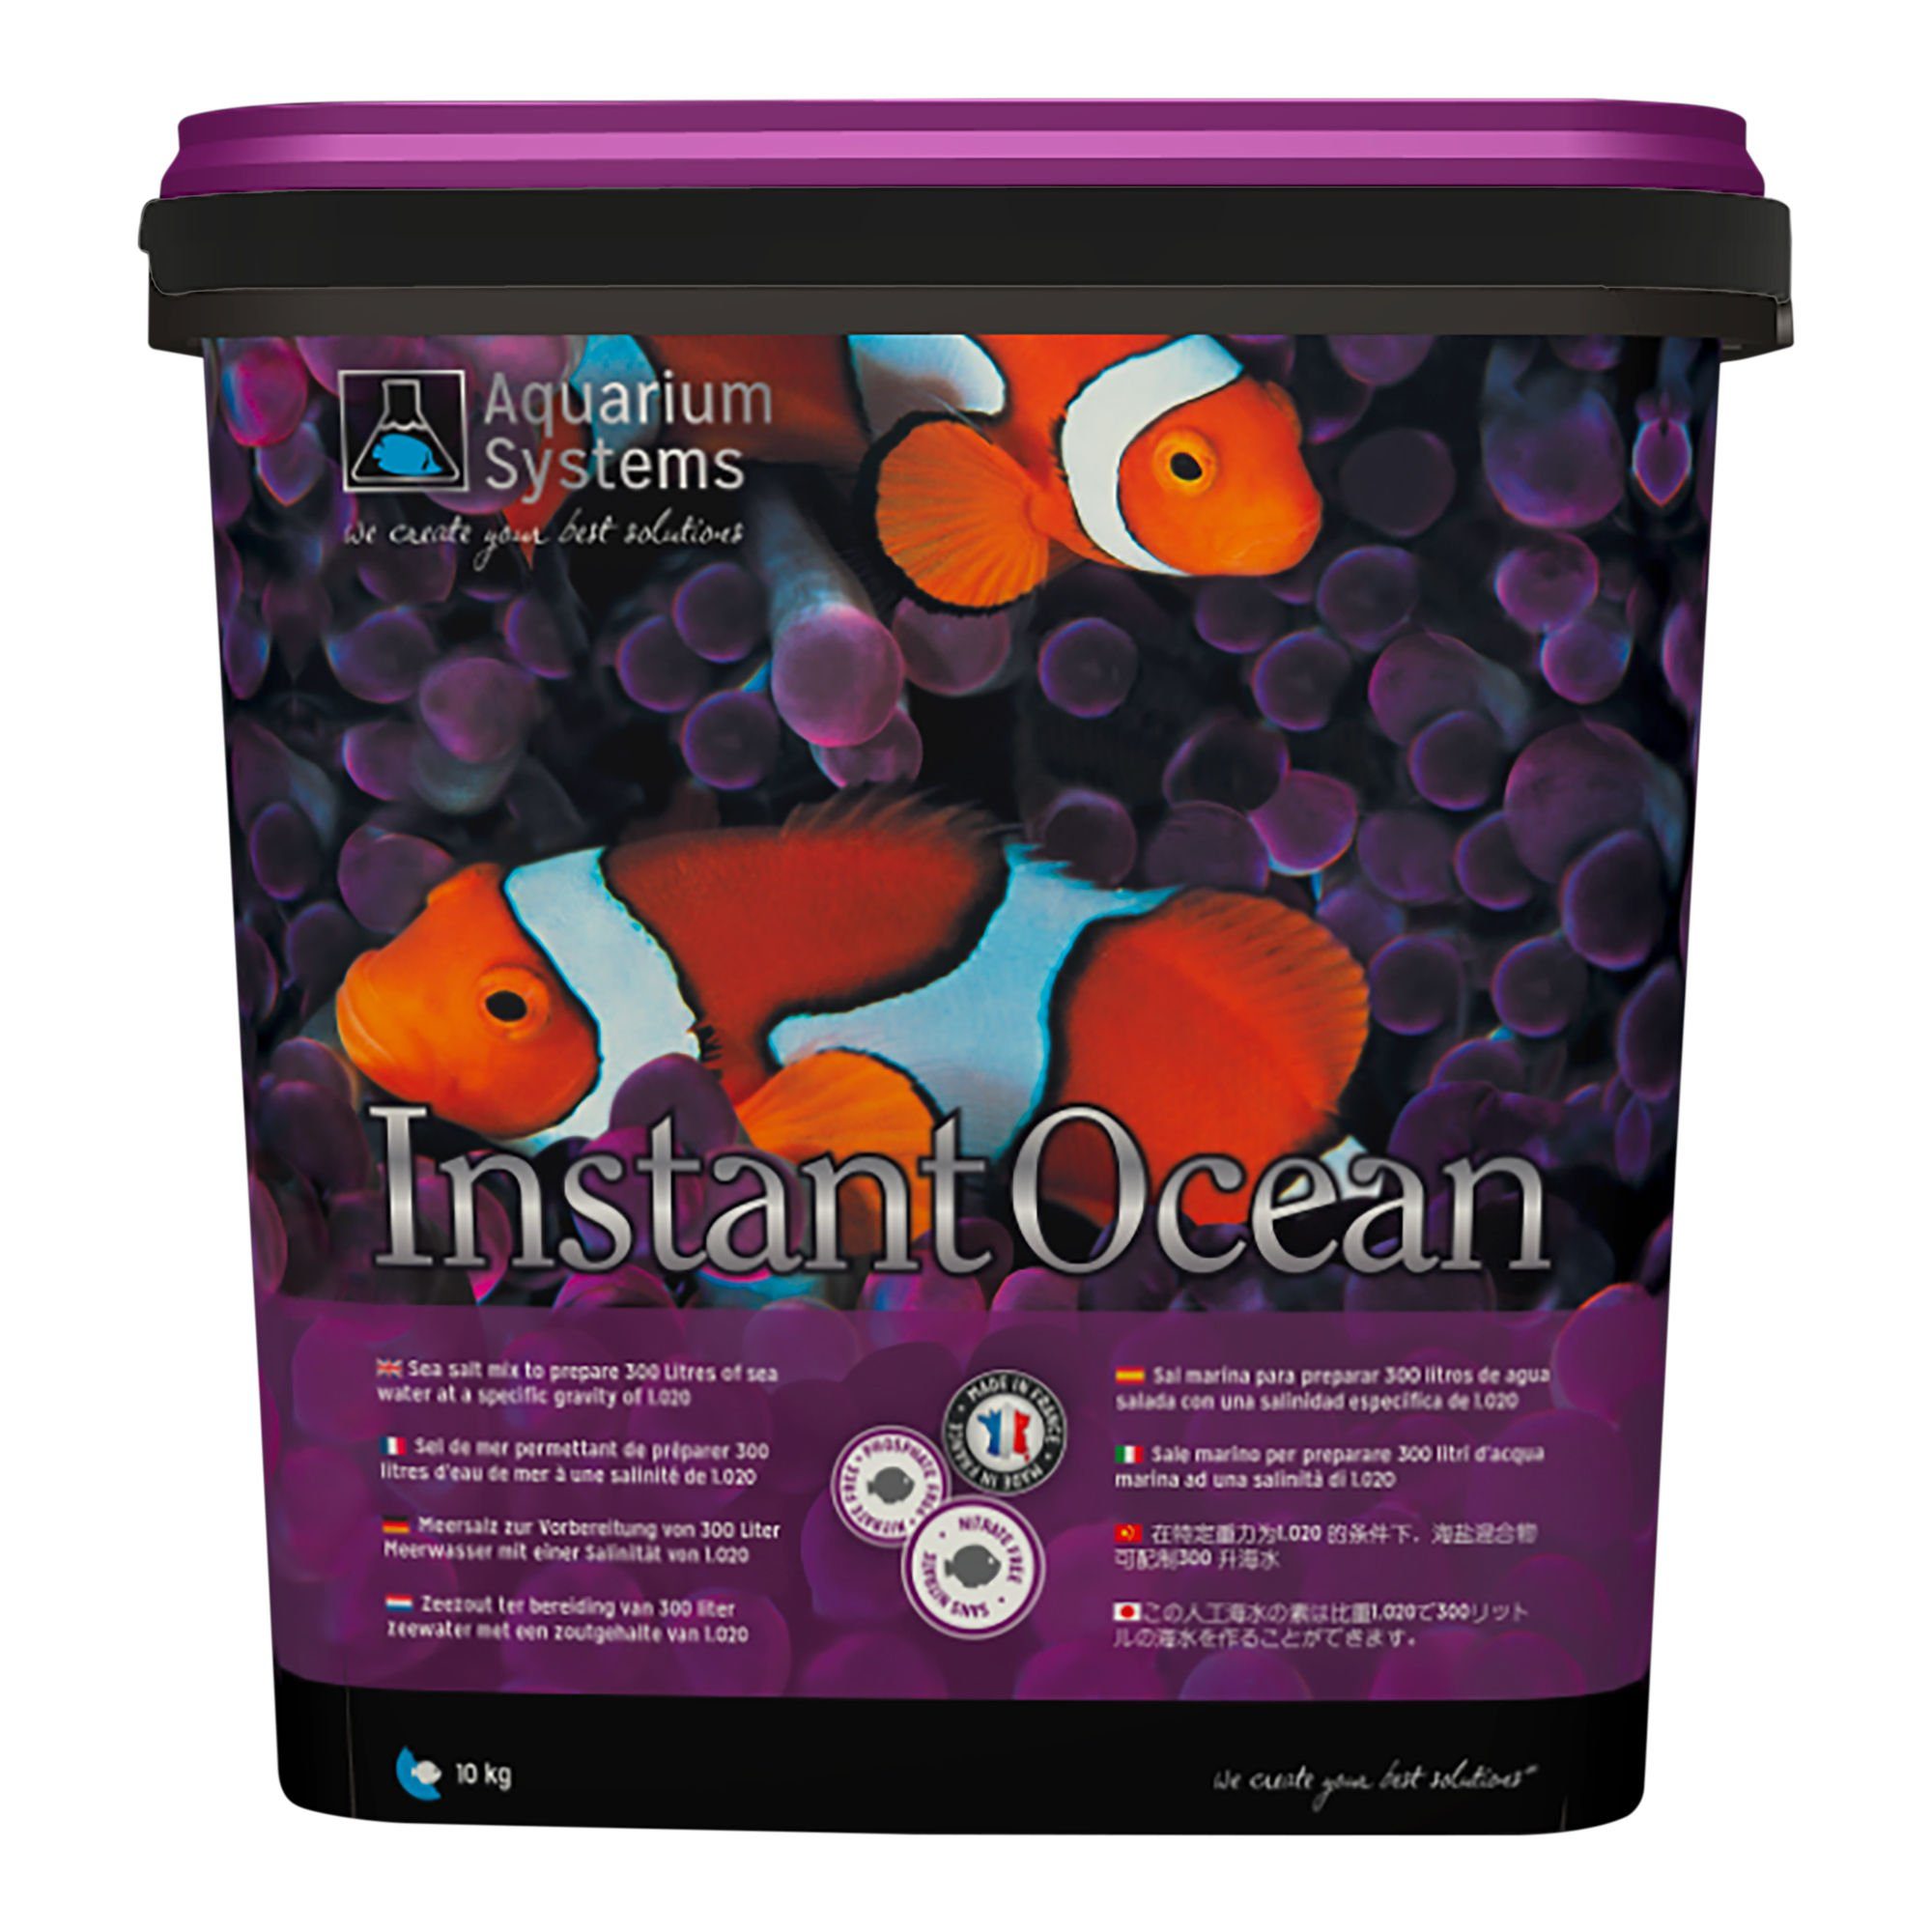 Aquarium Systems Aquariumpflege Instant Ocean Meersalz - 10 kg